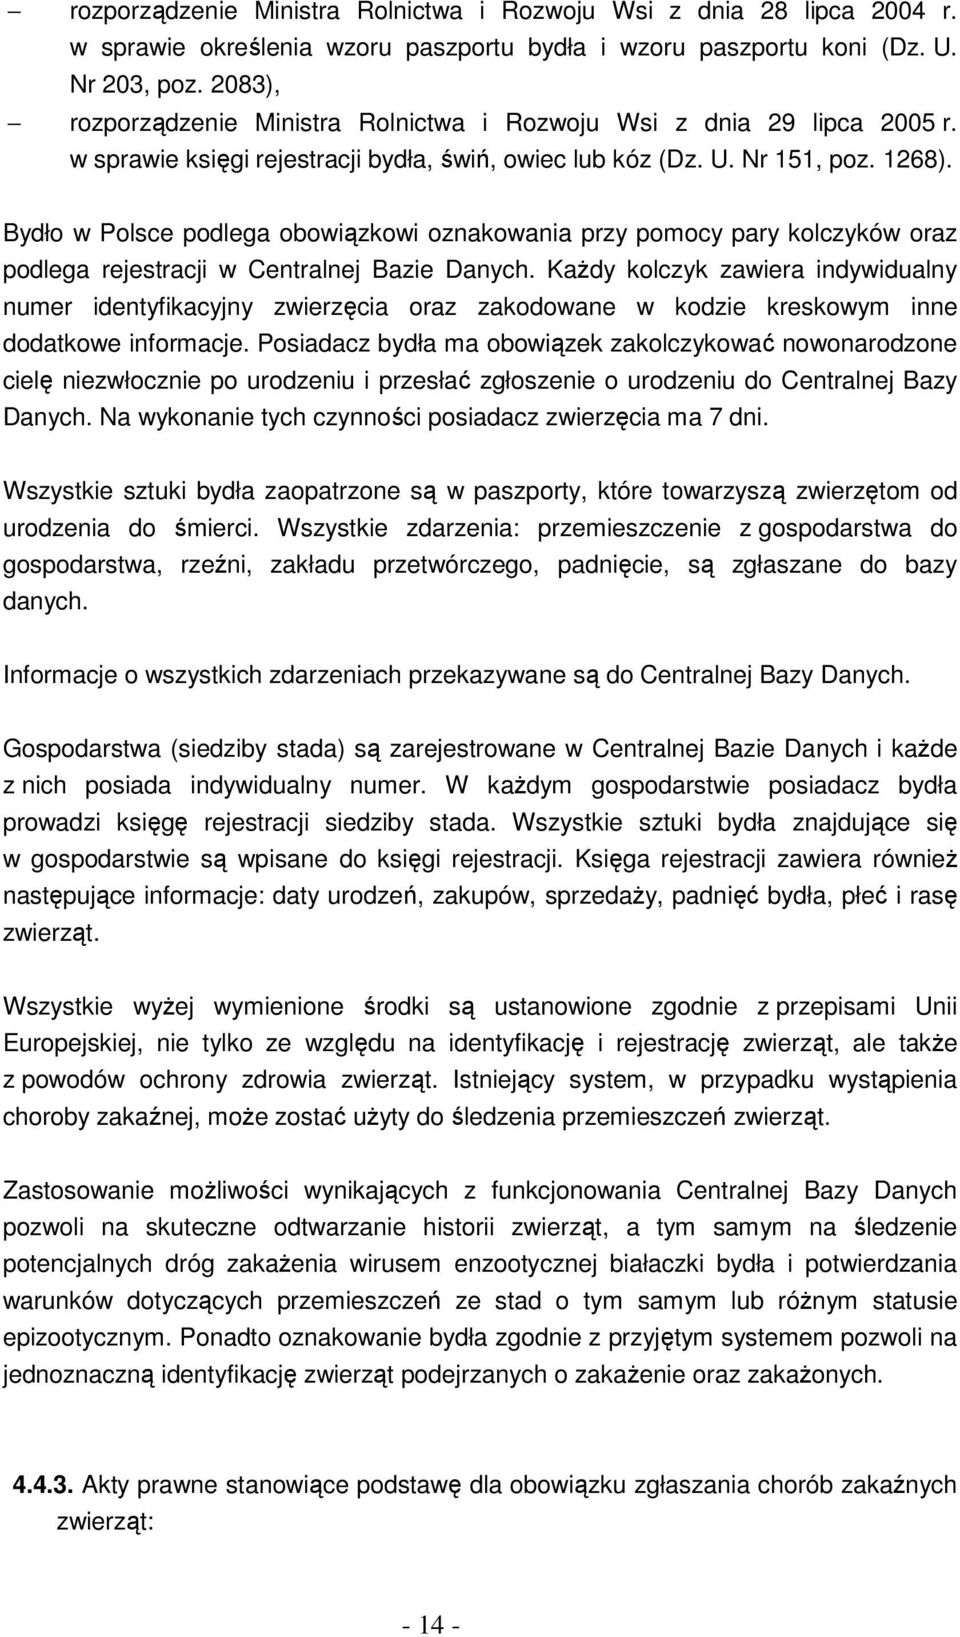 Bydło w Polsce podlega obowiązkowi oznakowania przy pomocy pary kolczyków oraz podlega rejestracji w Centralnej Bazie Danych.